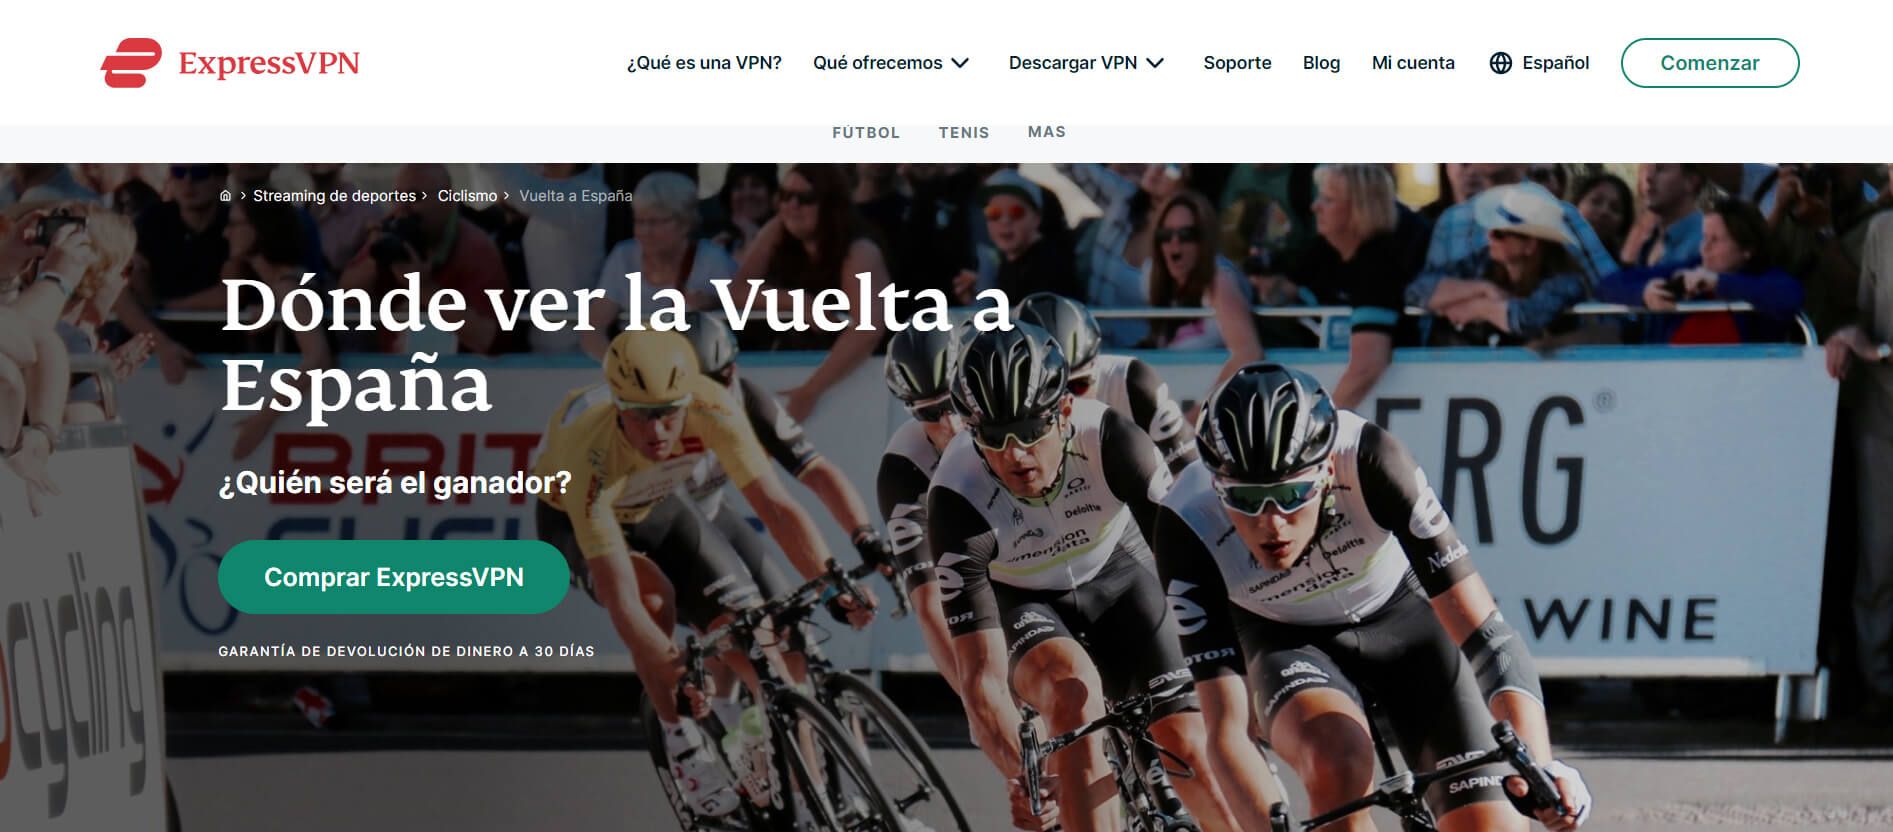 Expressvpn Vuelta España